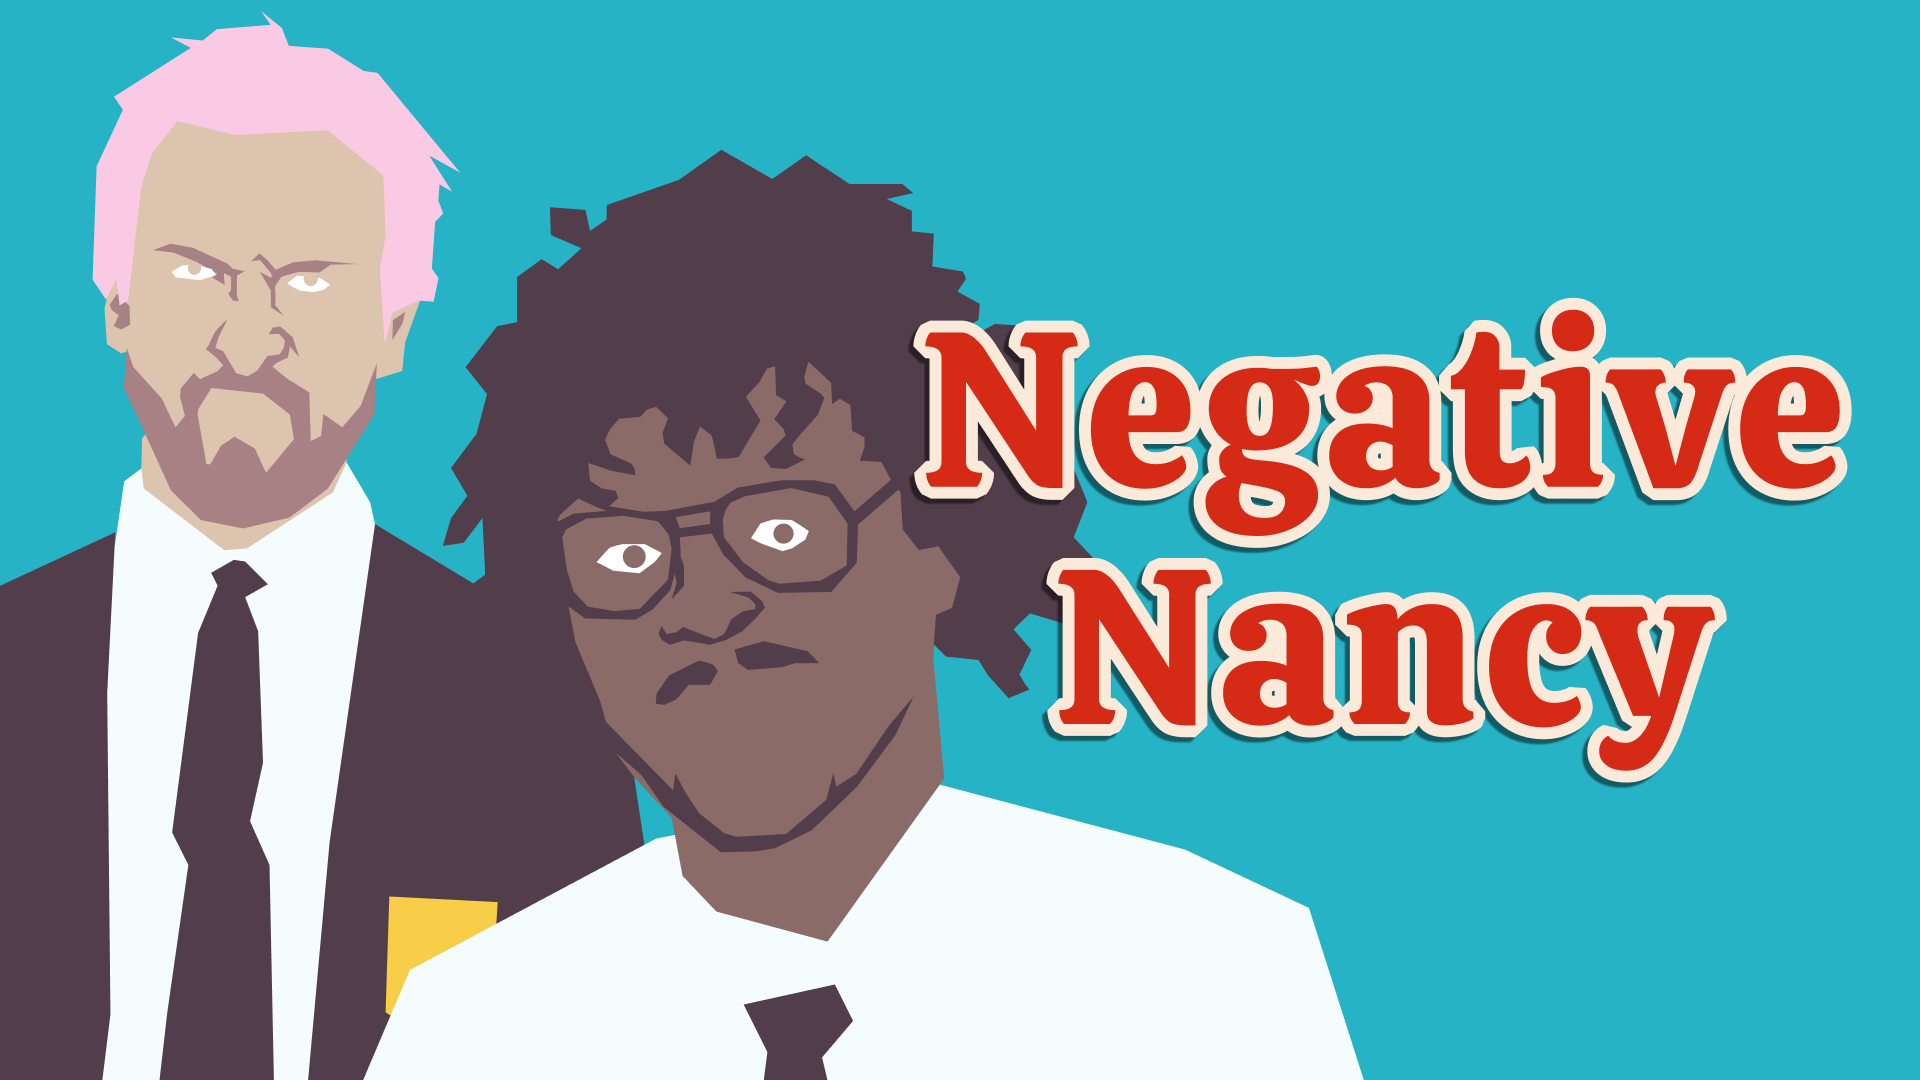 Negative Nancy Review 1